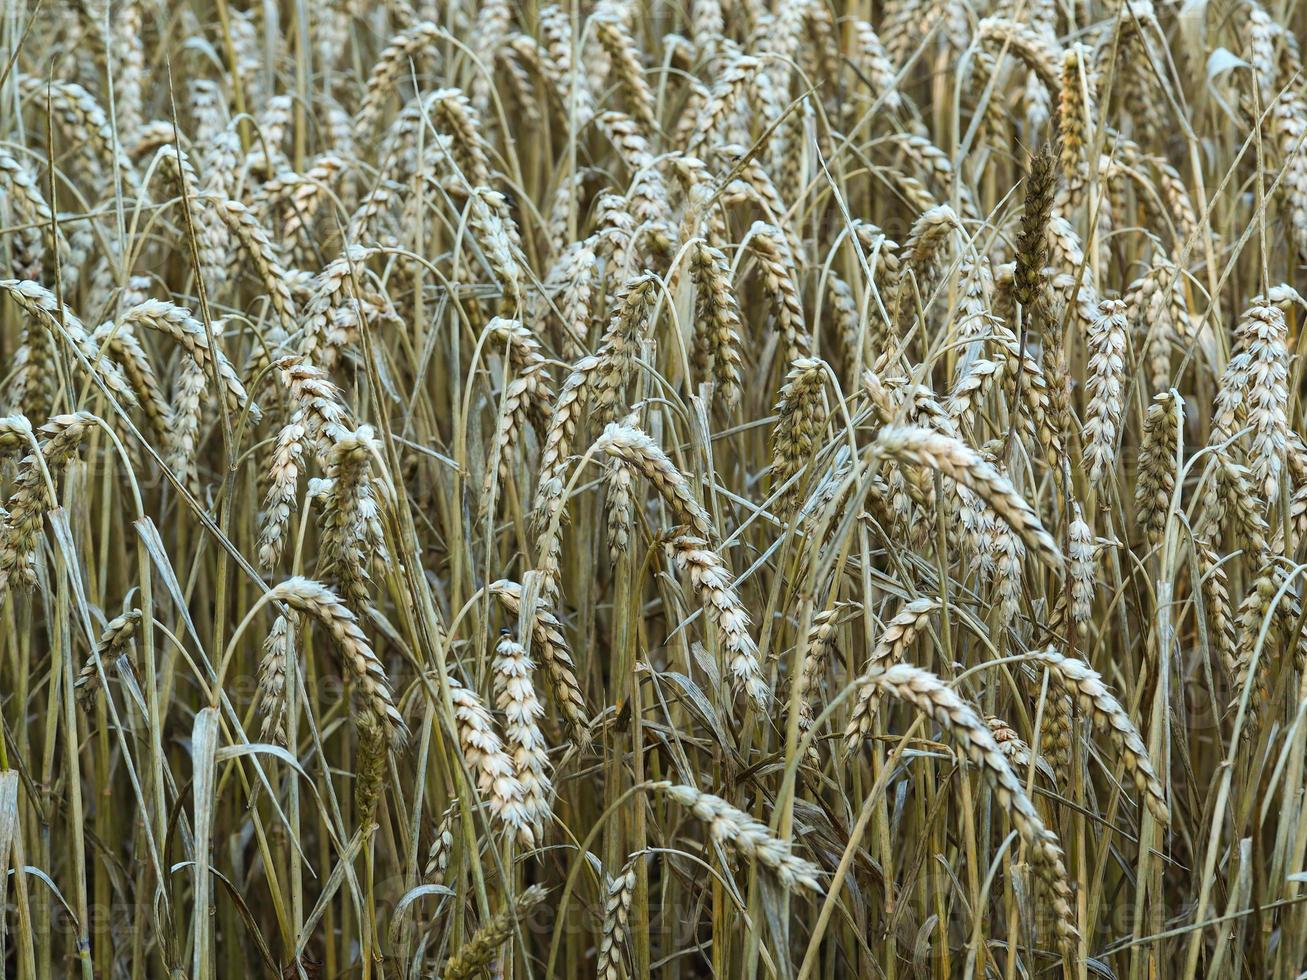 Ripe wheat ears in a wheat field photo